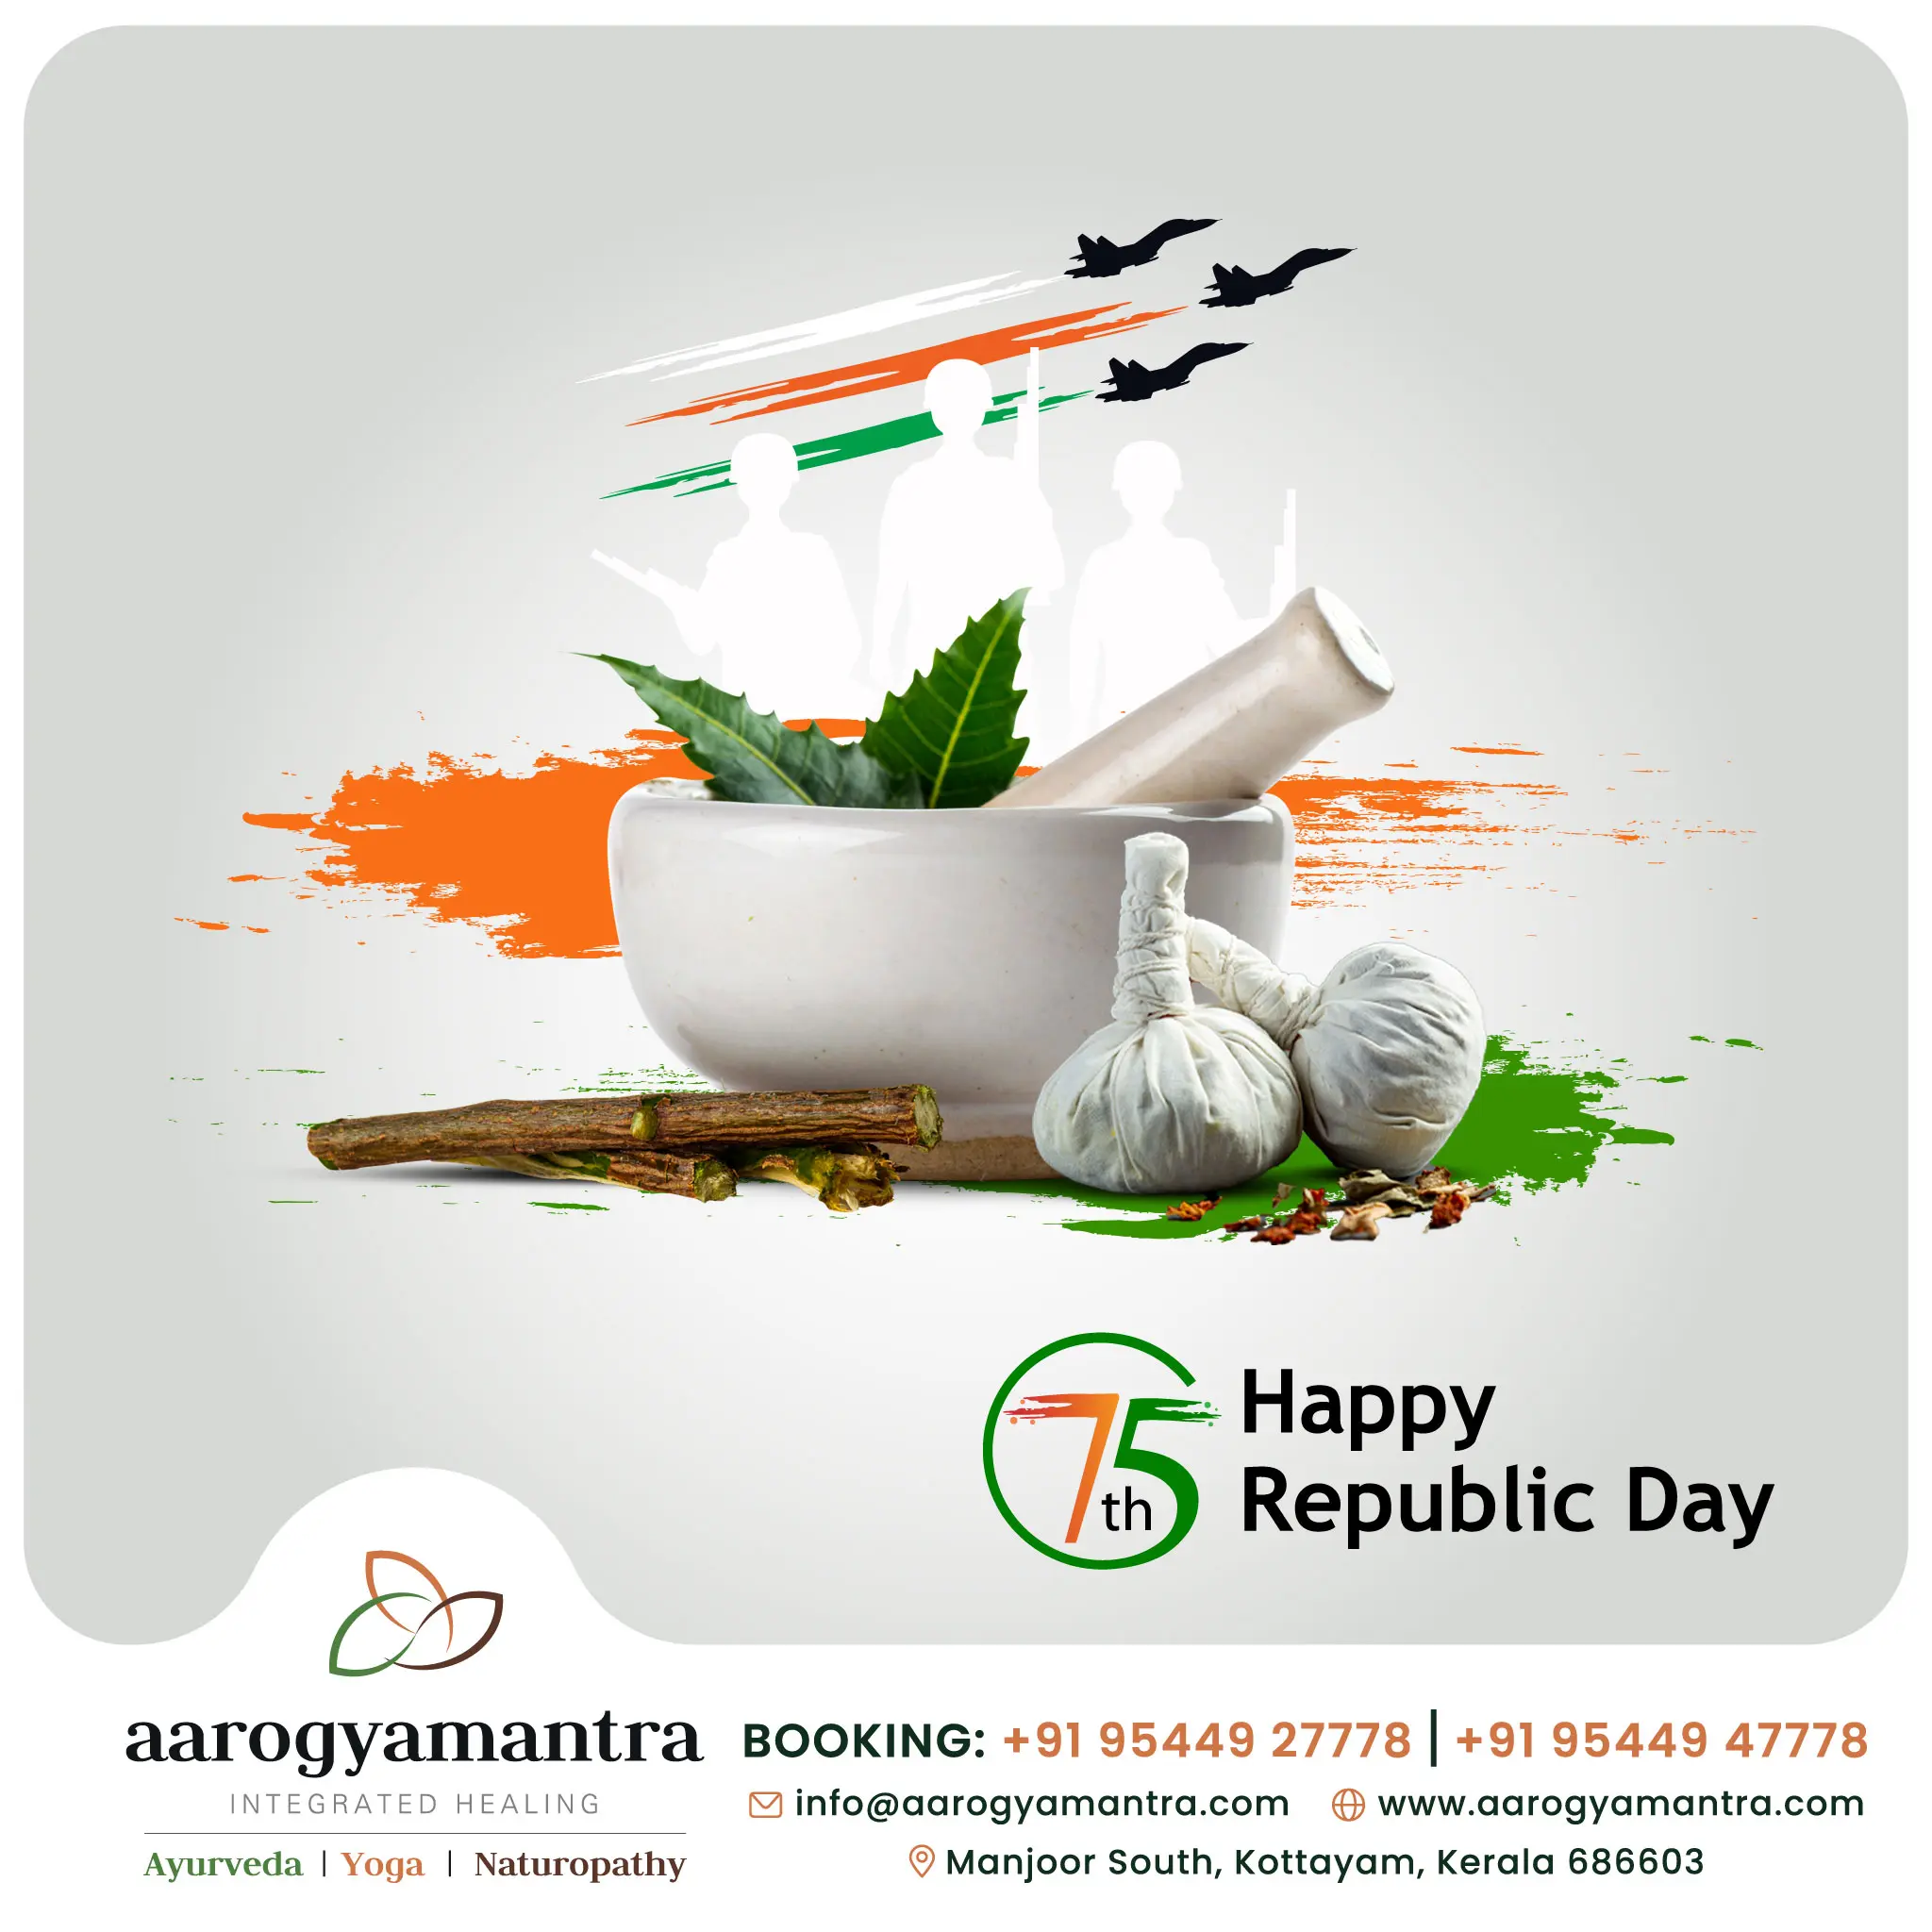 Happy 75th Republic Day